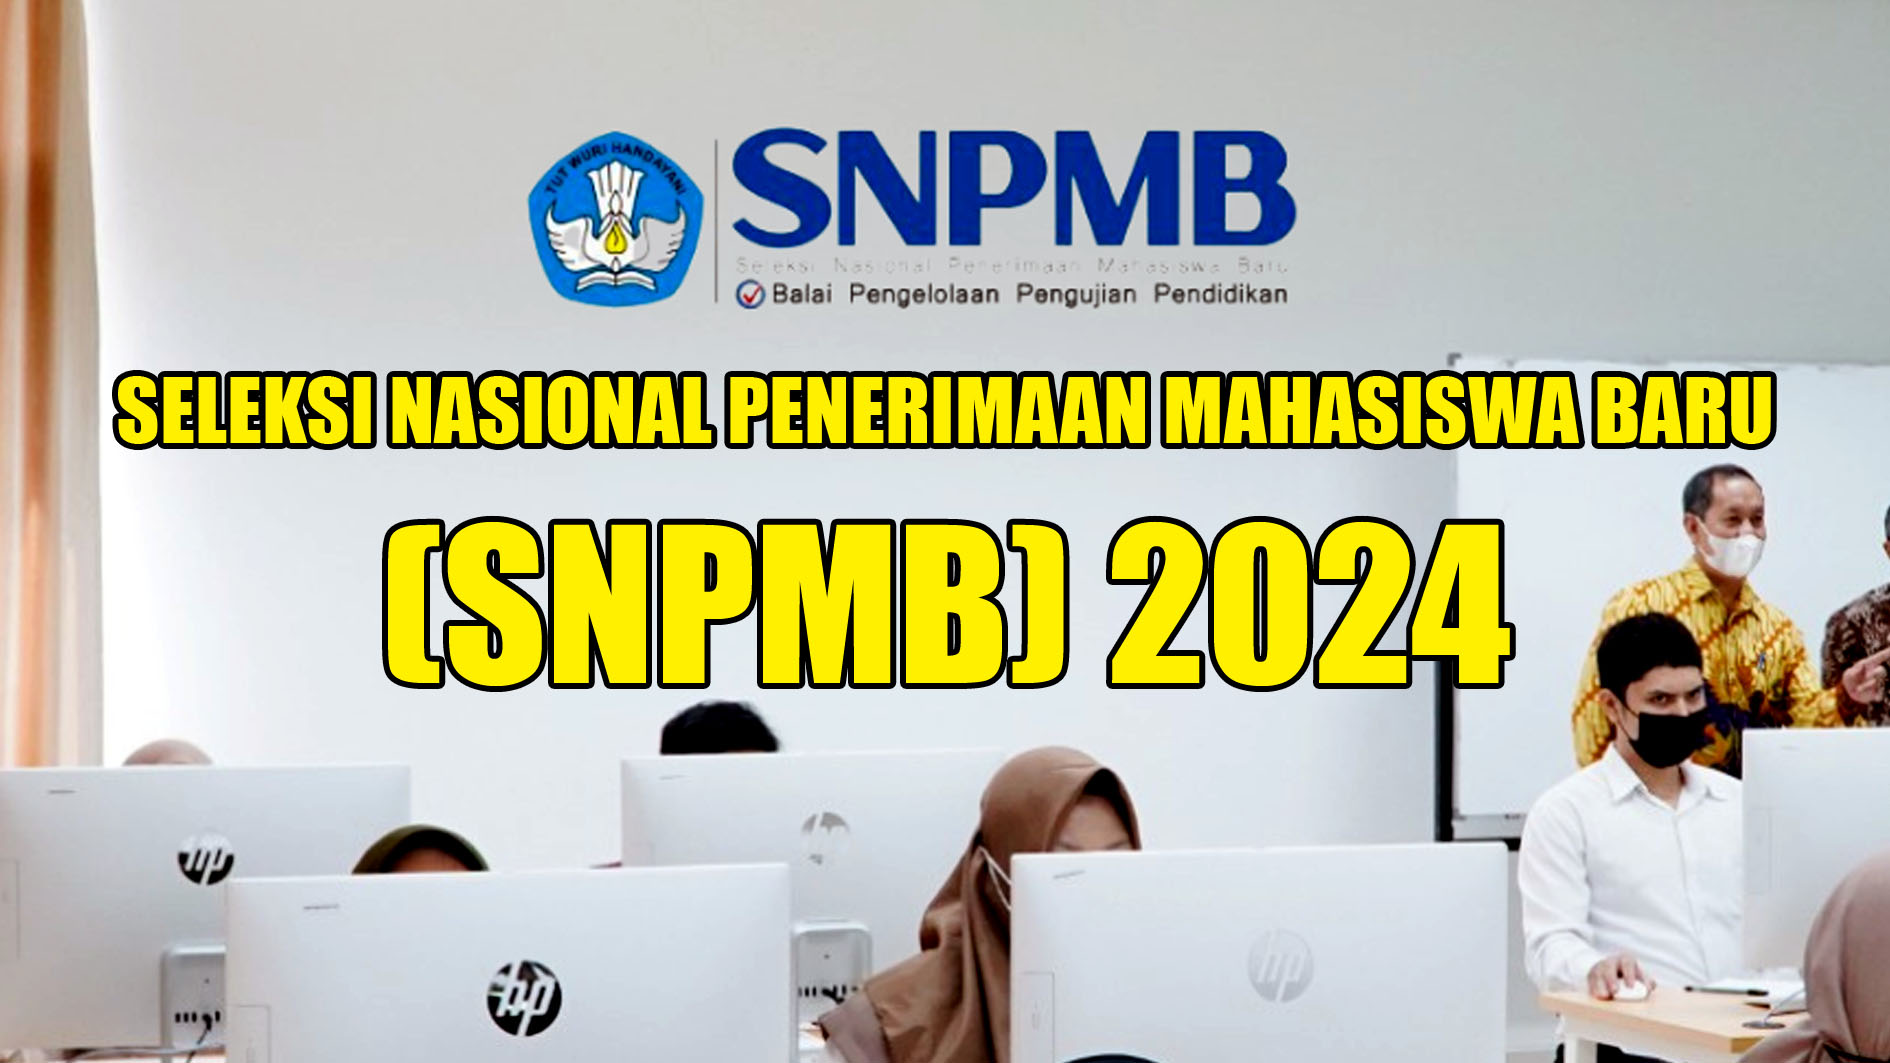 SNPMB 2024: Mahasiswa Baru Cuma Bisa Pilih 4 Prodi, Juga Ada Aturan Lainnya, Selengkapnya di Sini